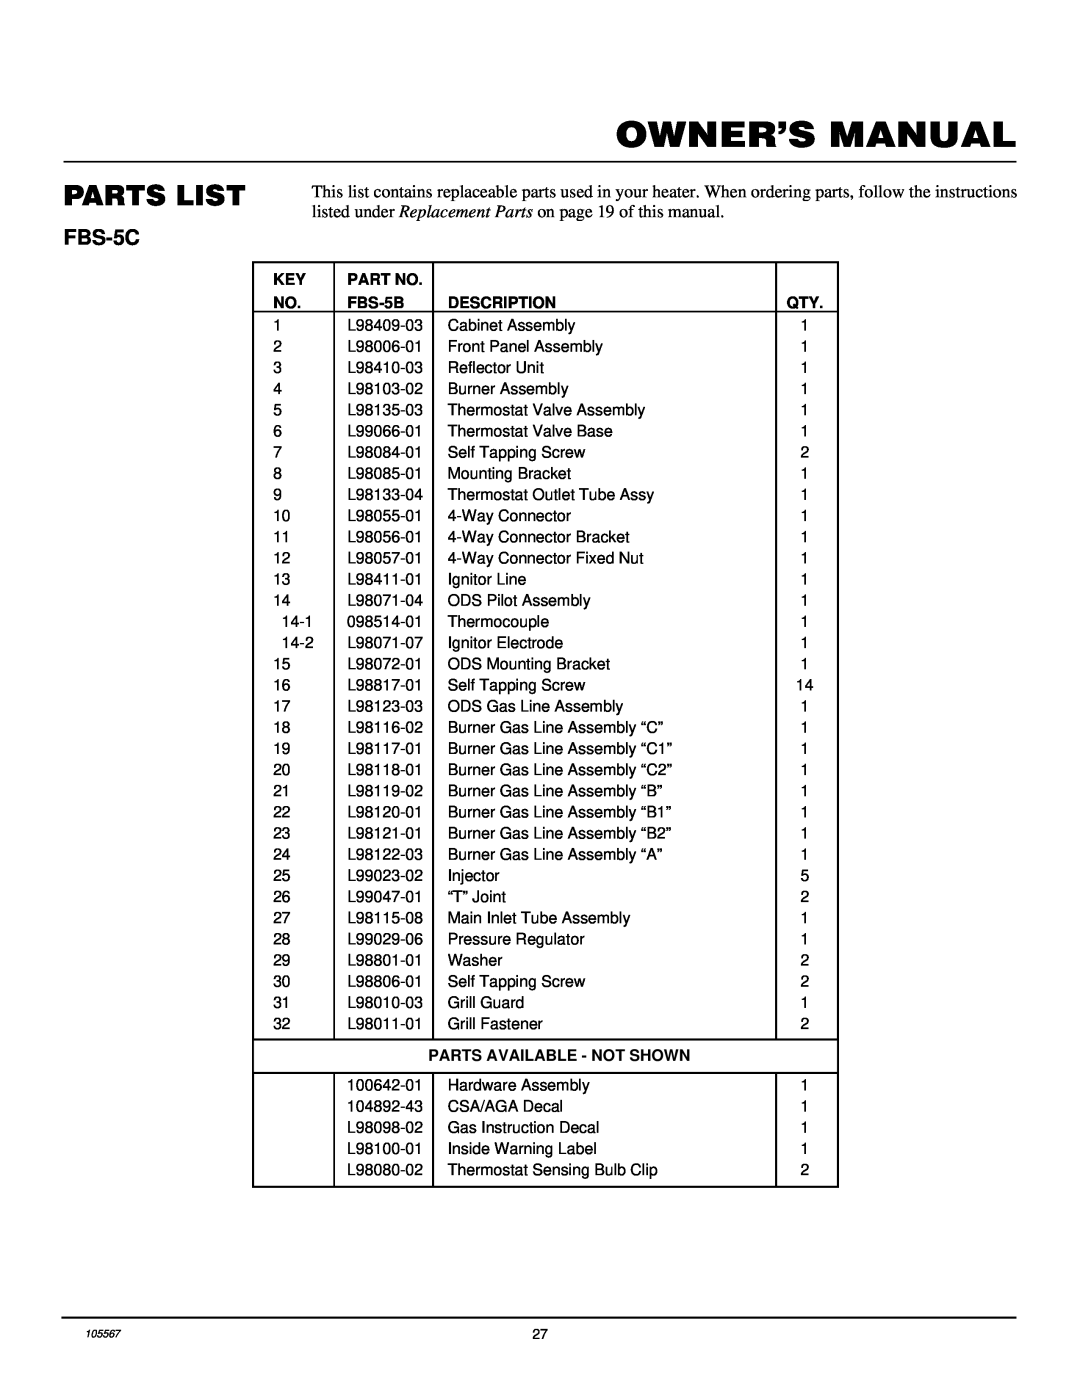 Desa FB-3B installation manual FBS-5C, Owner’S Manual, Parts List 